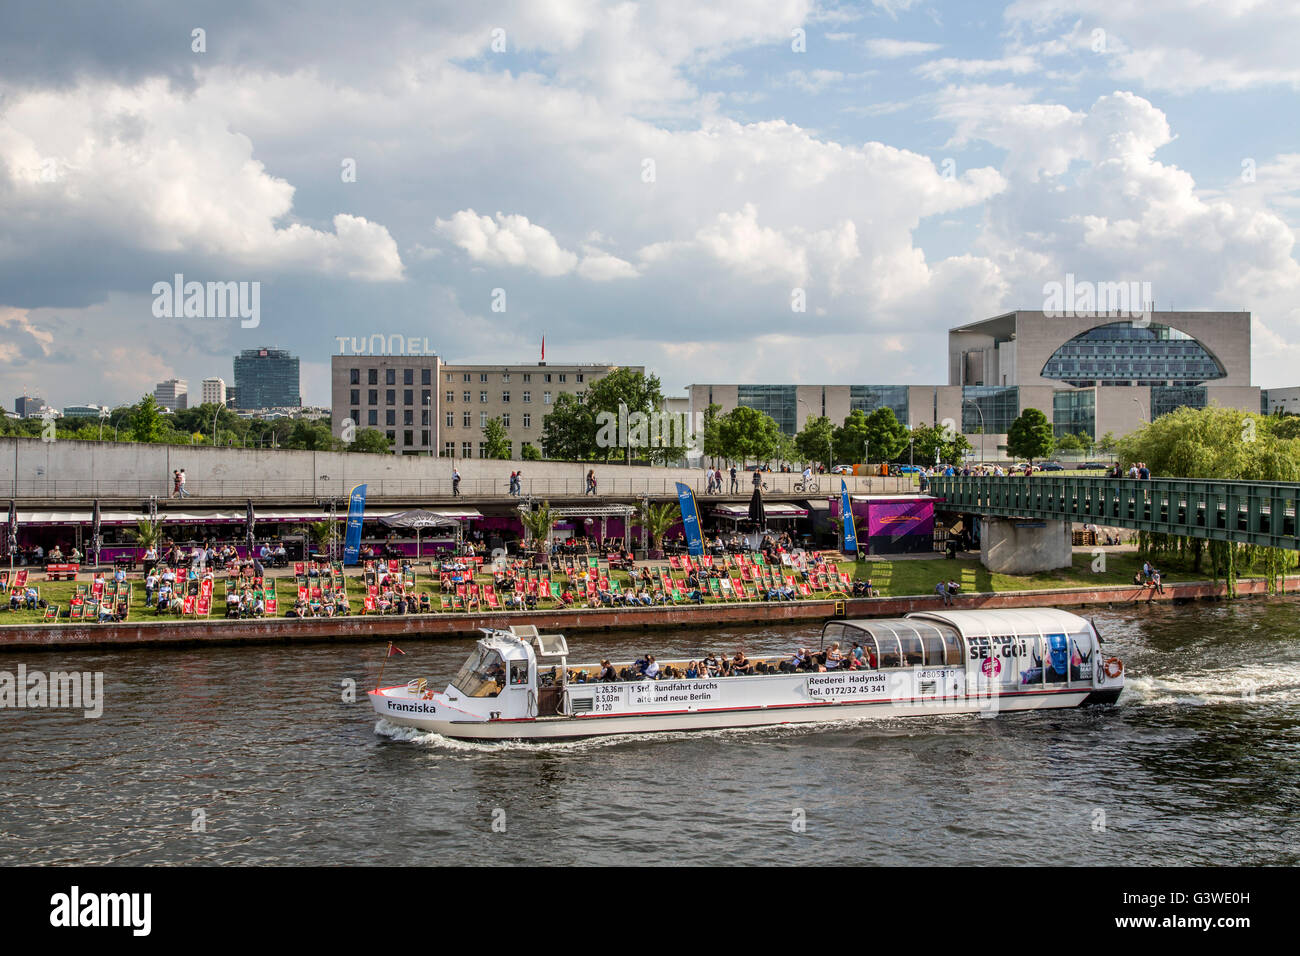 Les bateaux de croisière, voyage touristique, sur la rivière Spree, Berlin, Allemagne, du quartier du gouvernement, la capitale Beach beer garden, Banque D'Images